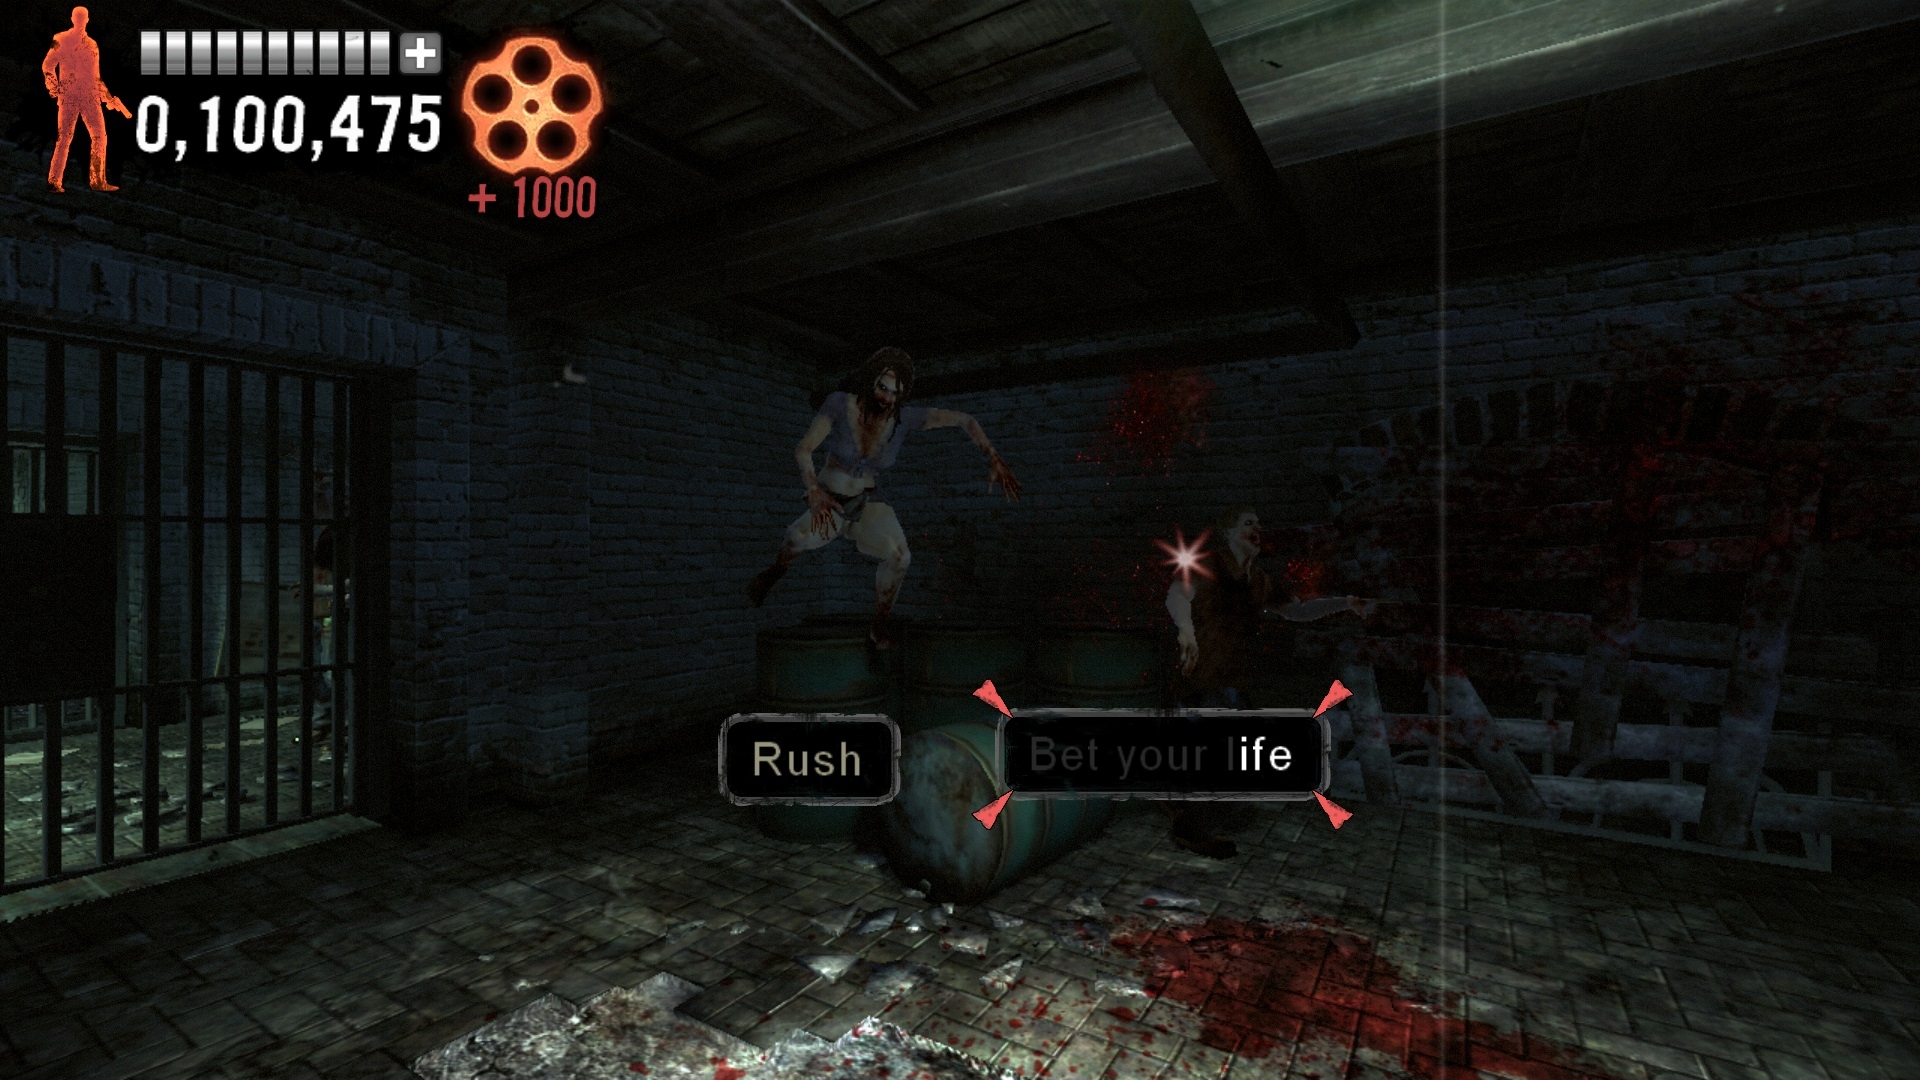 أفضل الألعاب التعليمية: كتابة الموتى: Overkill. تُظهر الصورة لاعبًا يكتب كلمة لقتل الزومبي